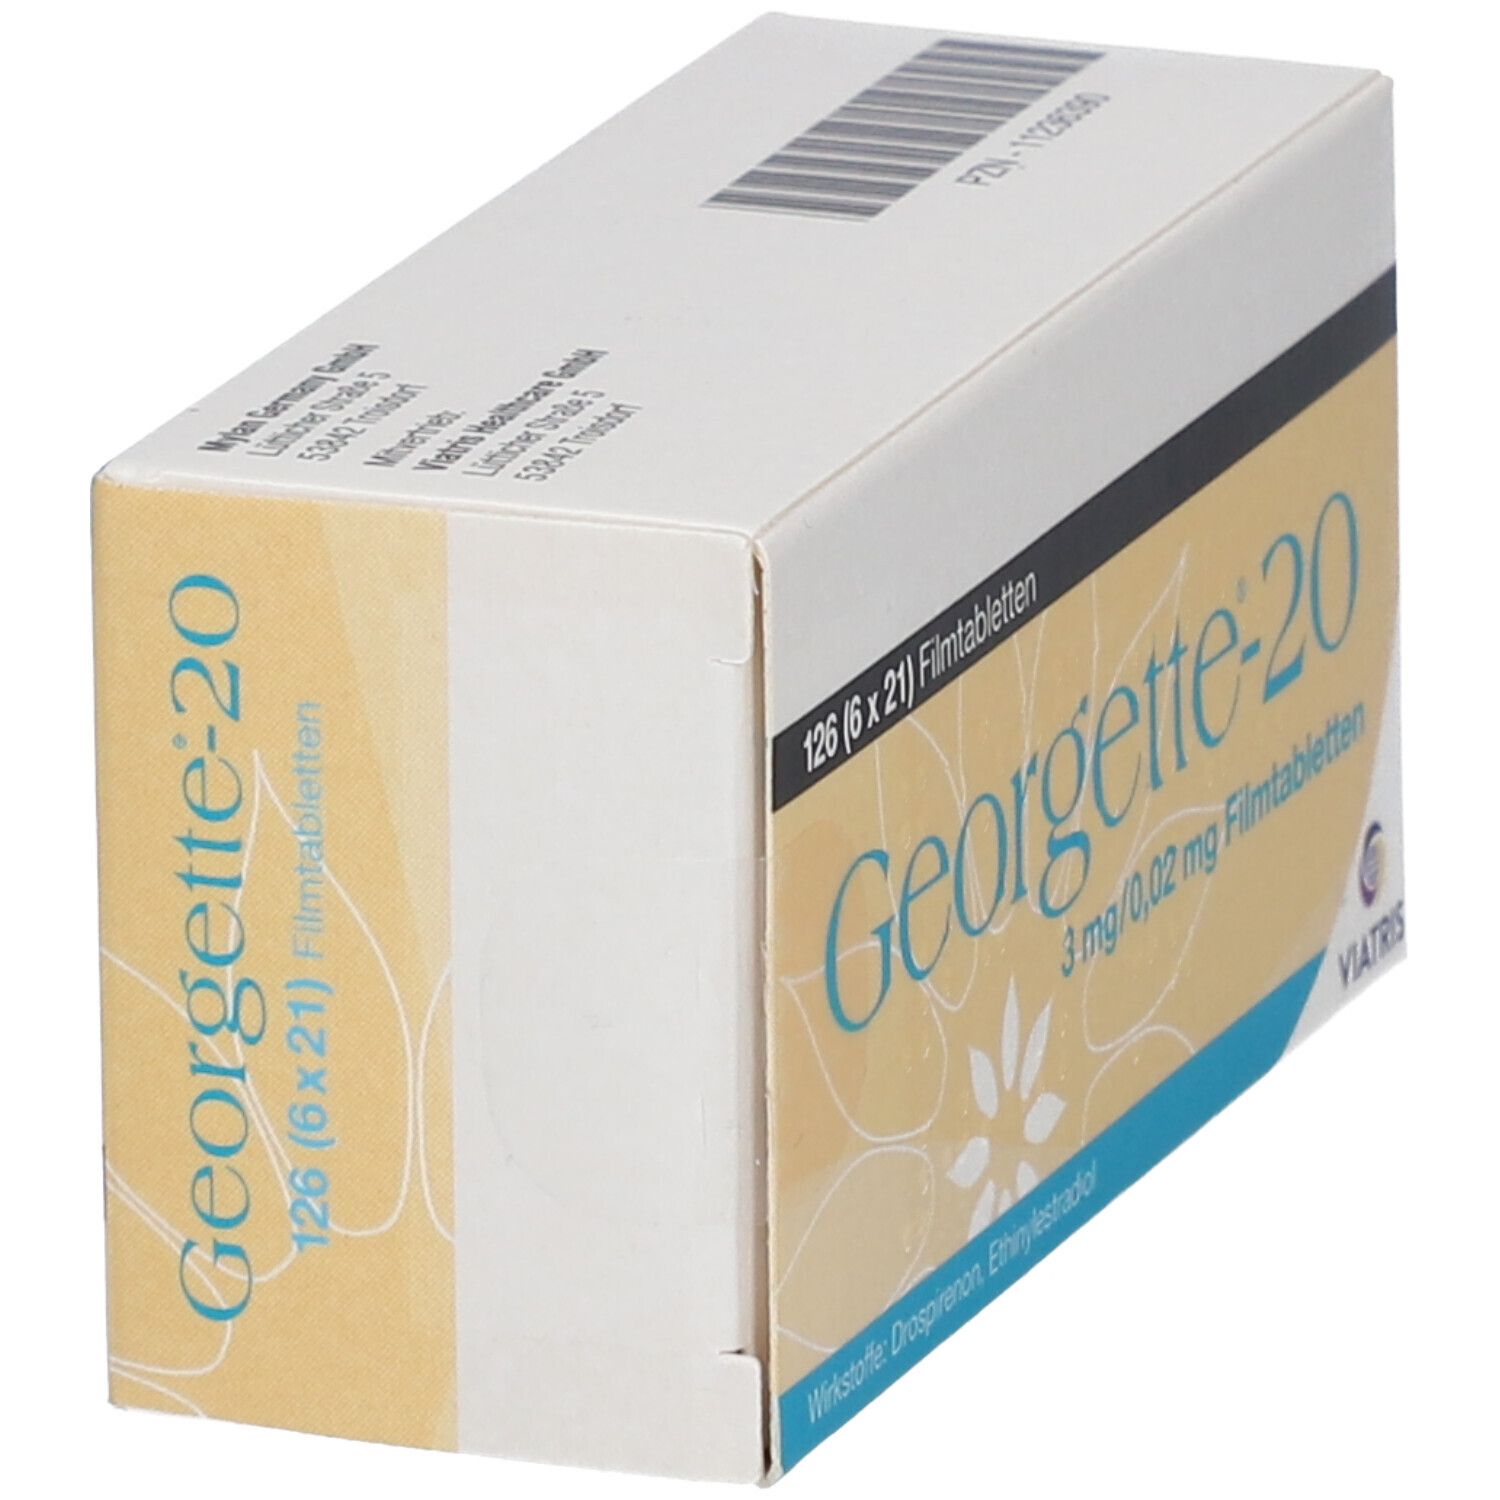 Georgette®-20 3 mg/0,02 mg